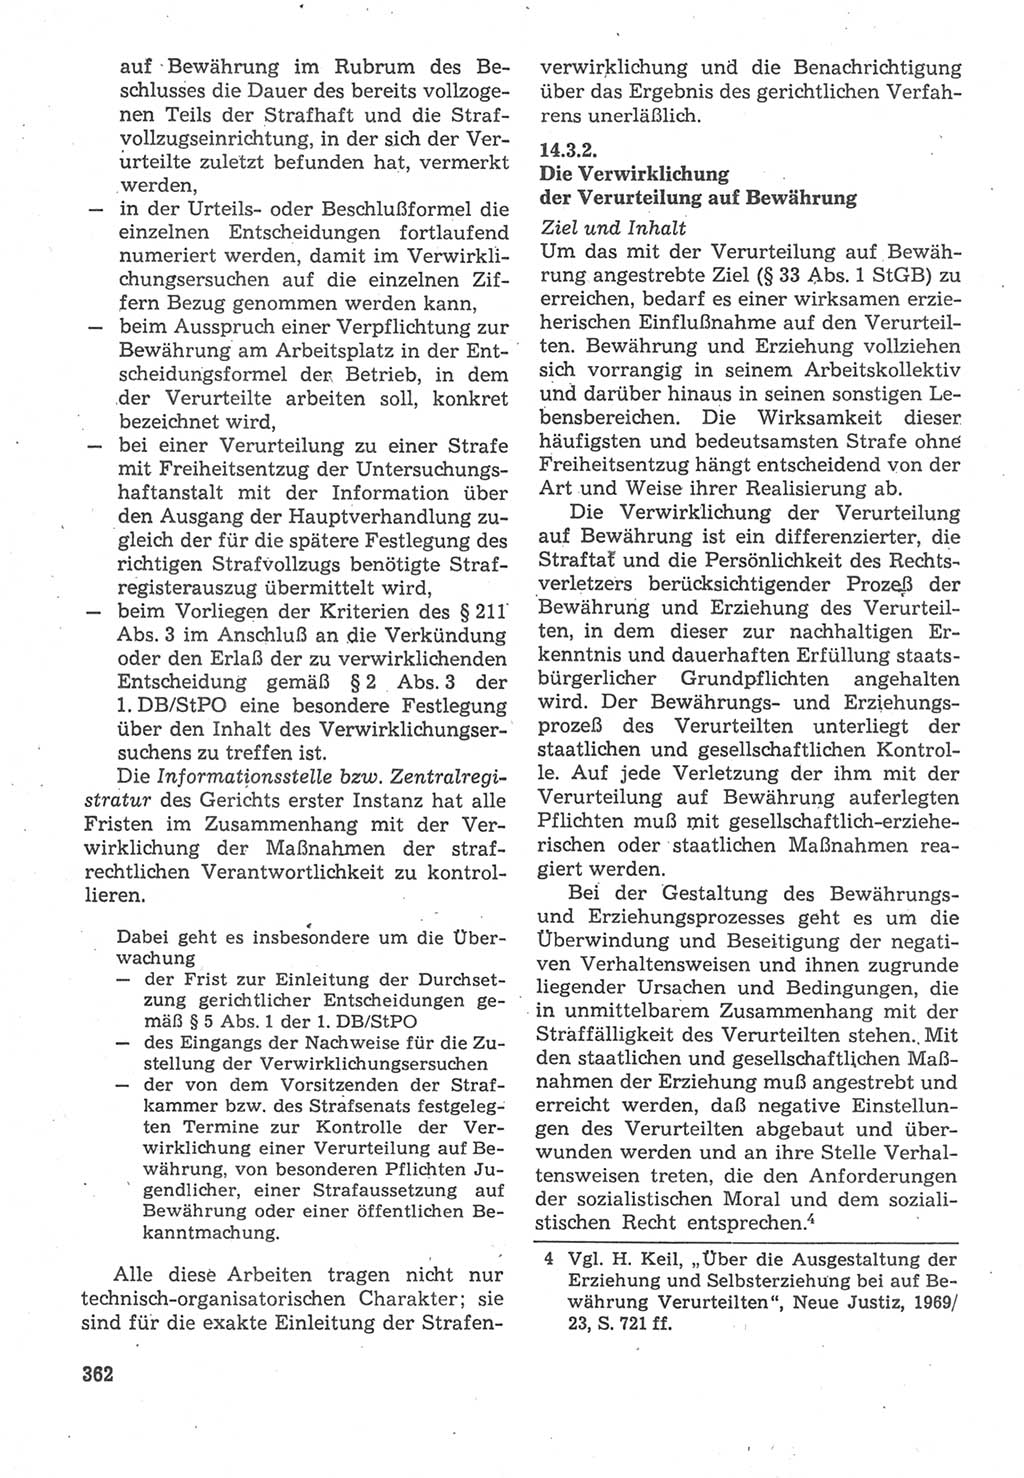 Strafverfahrensrecht [Deutsche Demokratische Republik (DDR)], Lehrbuch 1987, Seite 362 (Strafverf.-R. DDR Lb. 1987, S. 362)